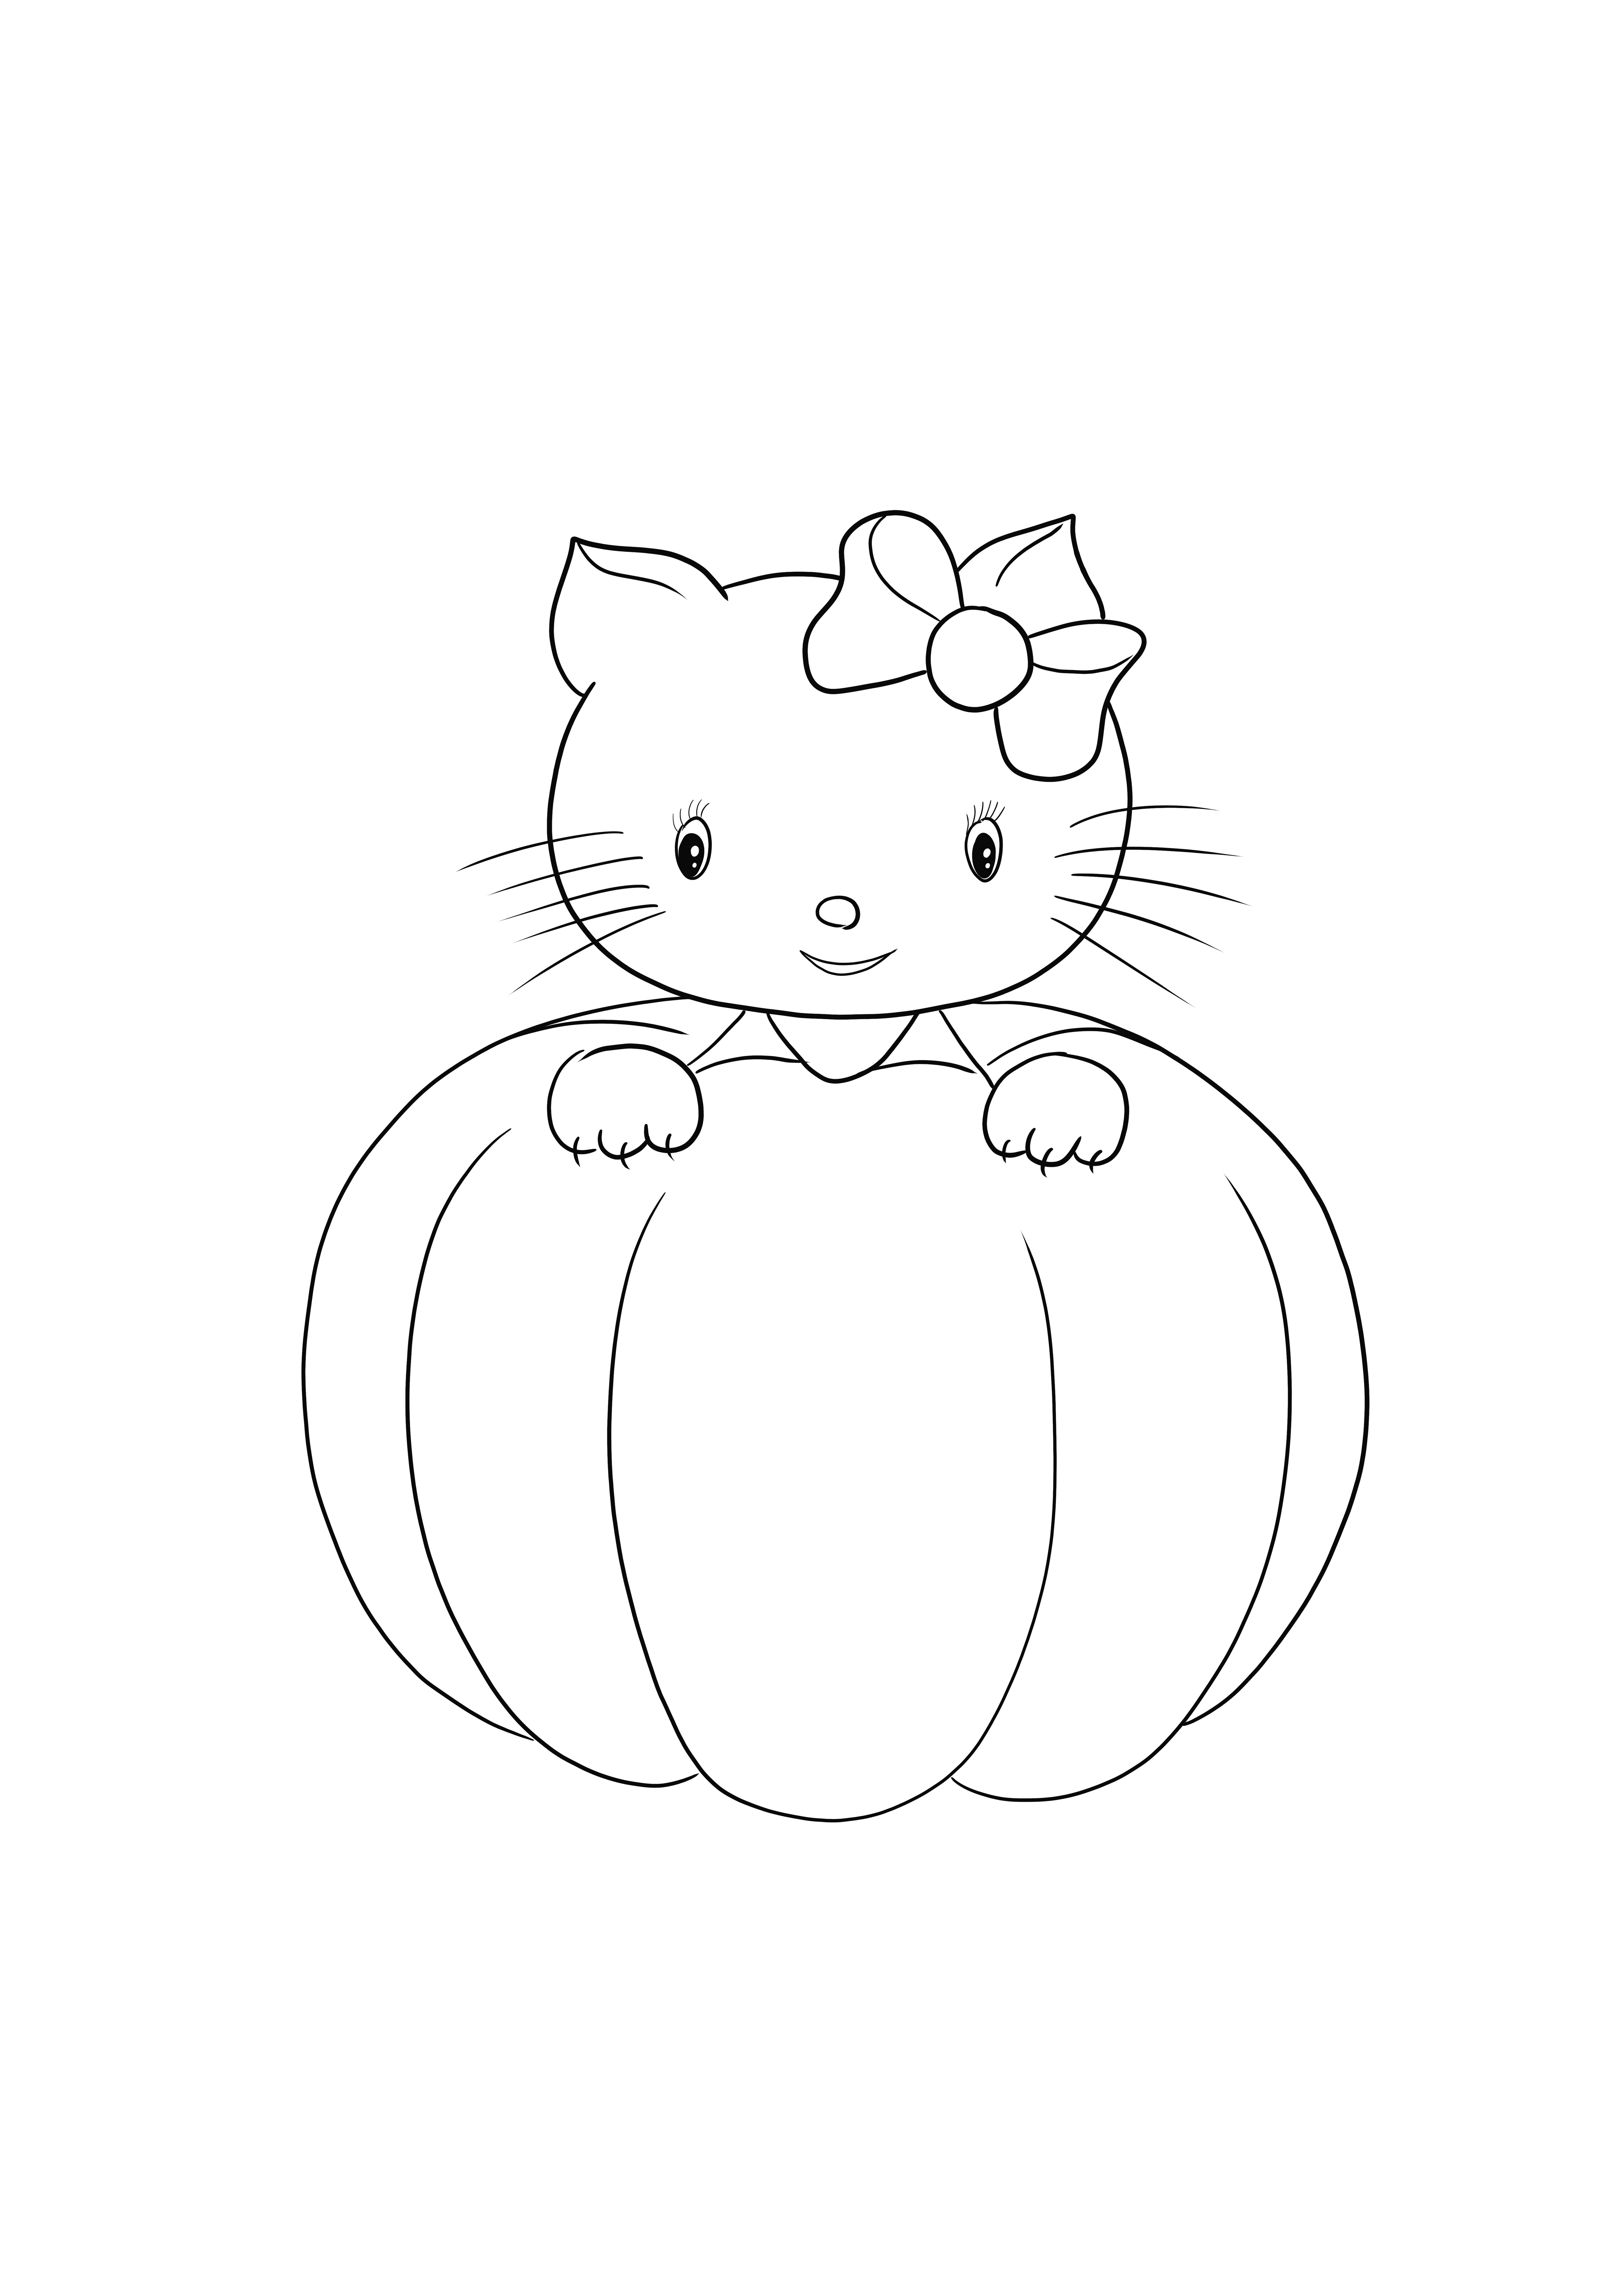 Hello Kitty Halloween es una imagen simple y gratuita para colorear o guardar para más tarde